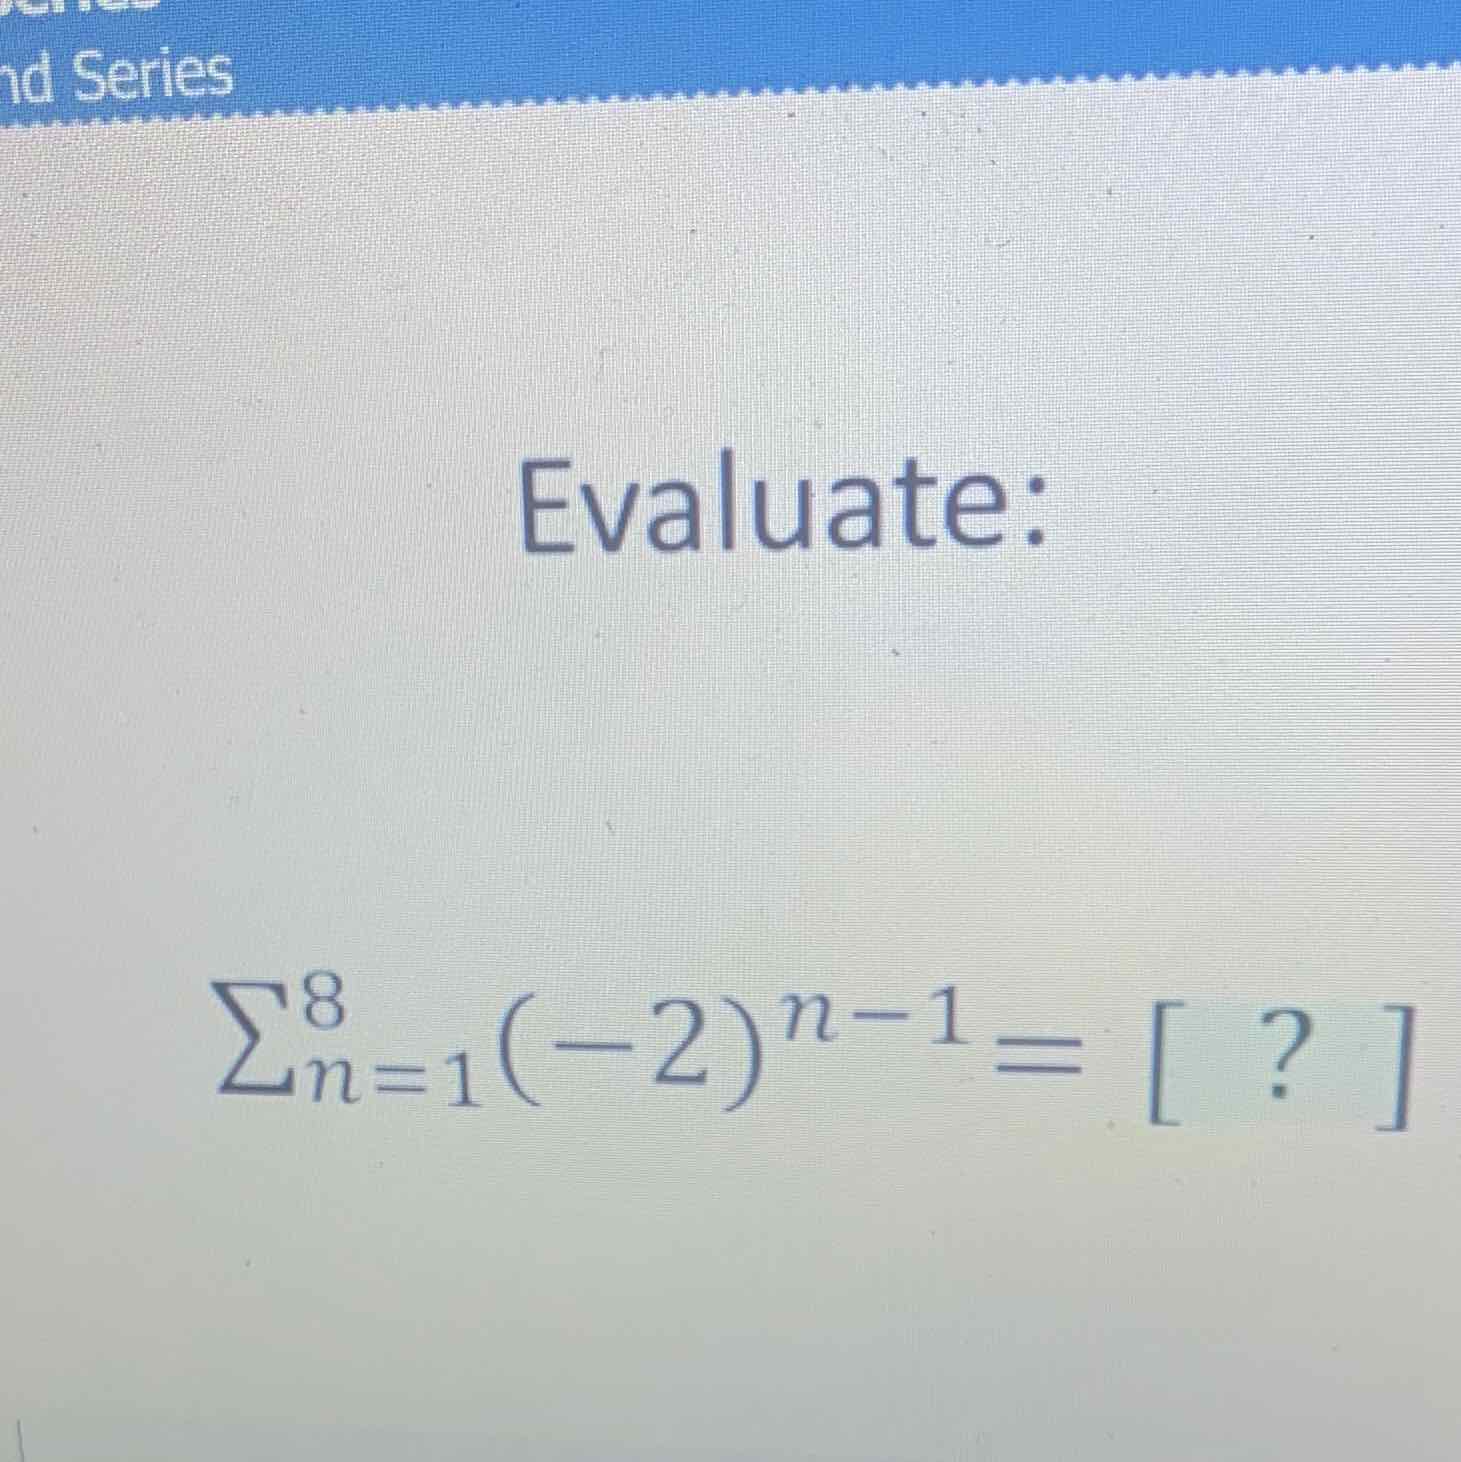 Evaluate:
\[
\sum_{n=1}^{8}(-2)^{n-1}=[?]
\]